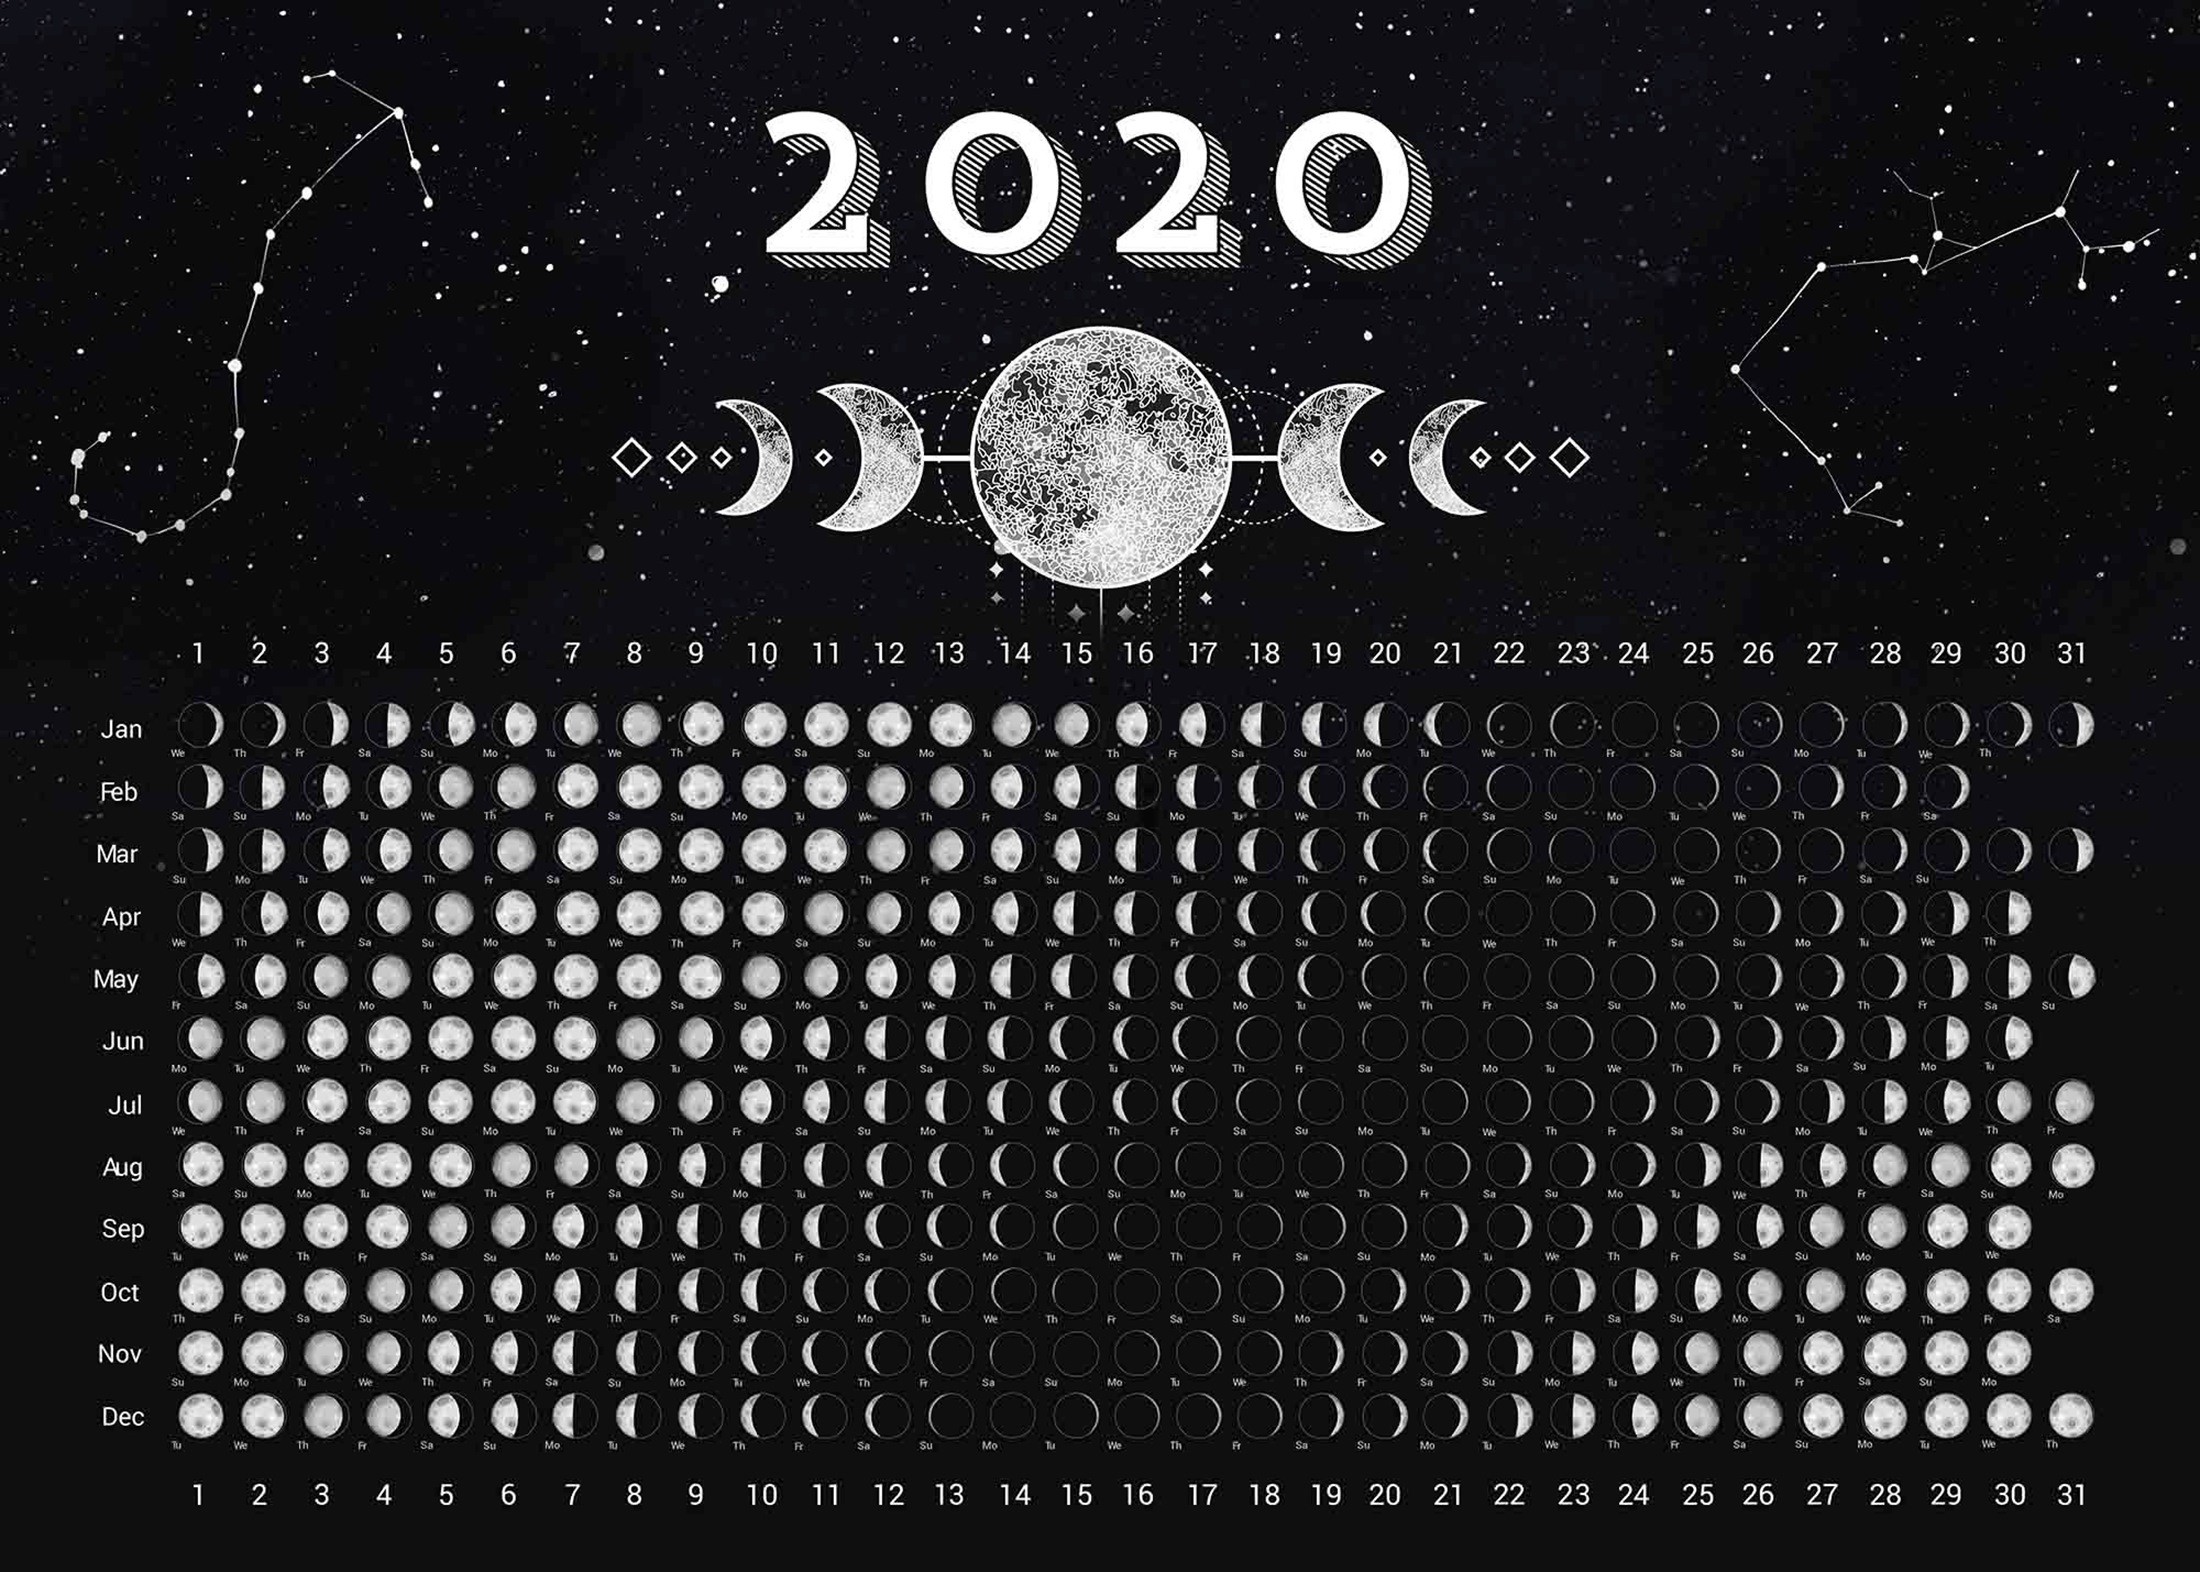 Календарь фаз Луны на 2020 год